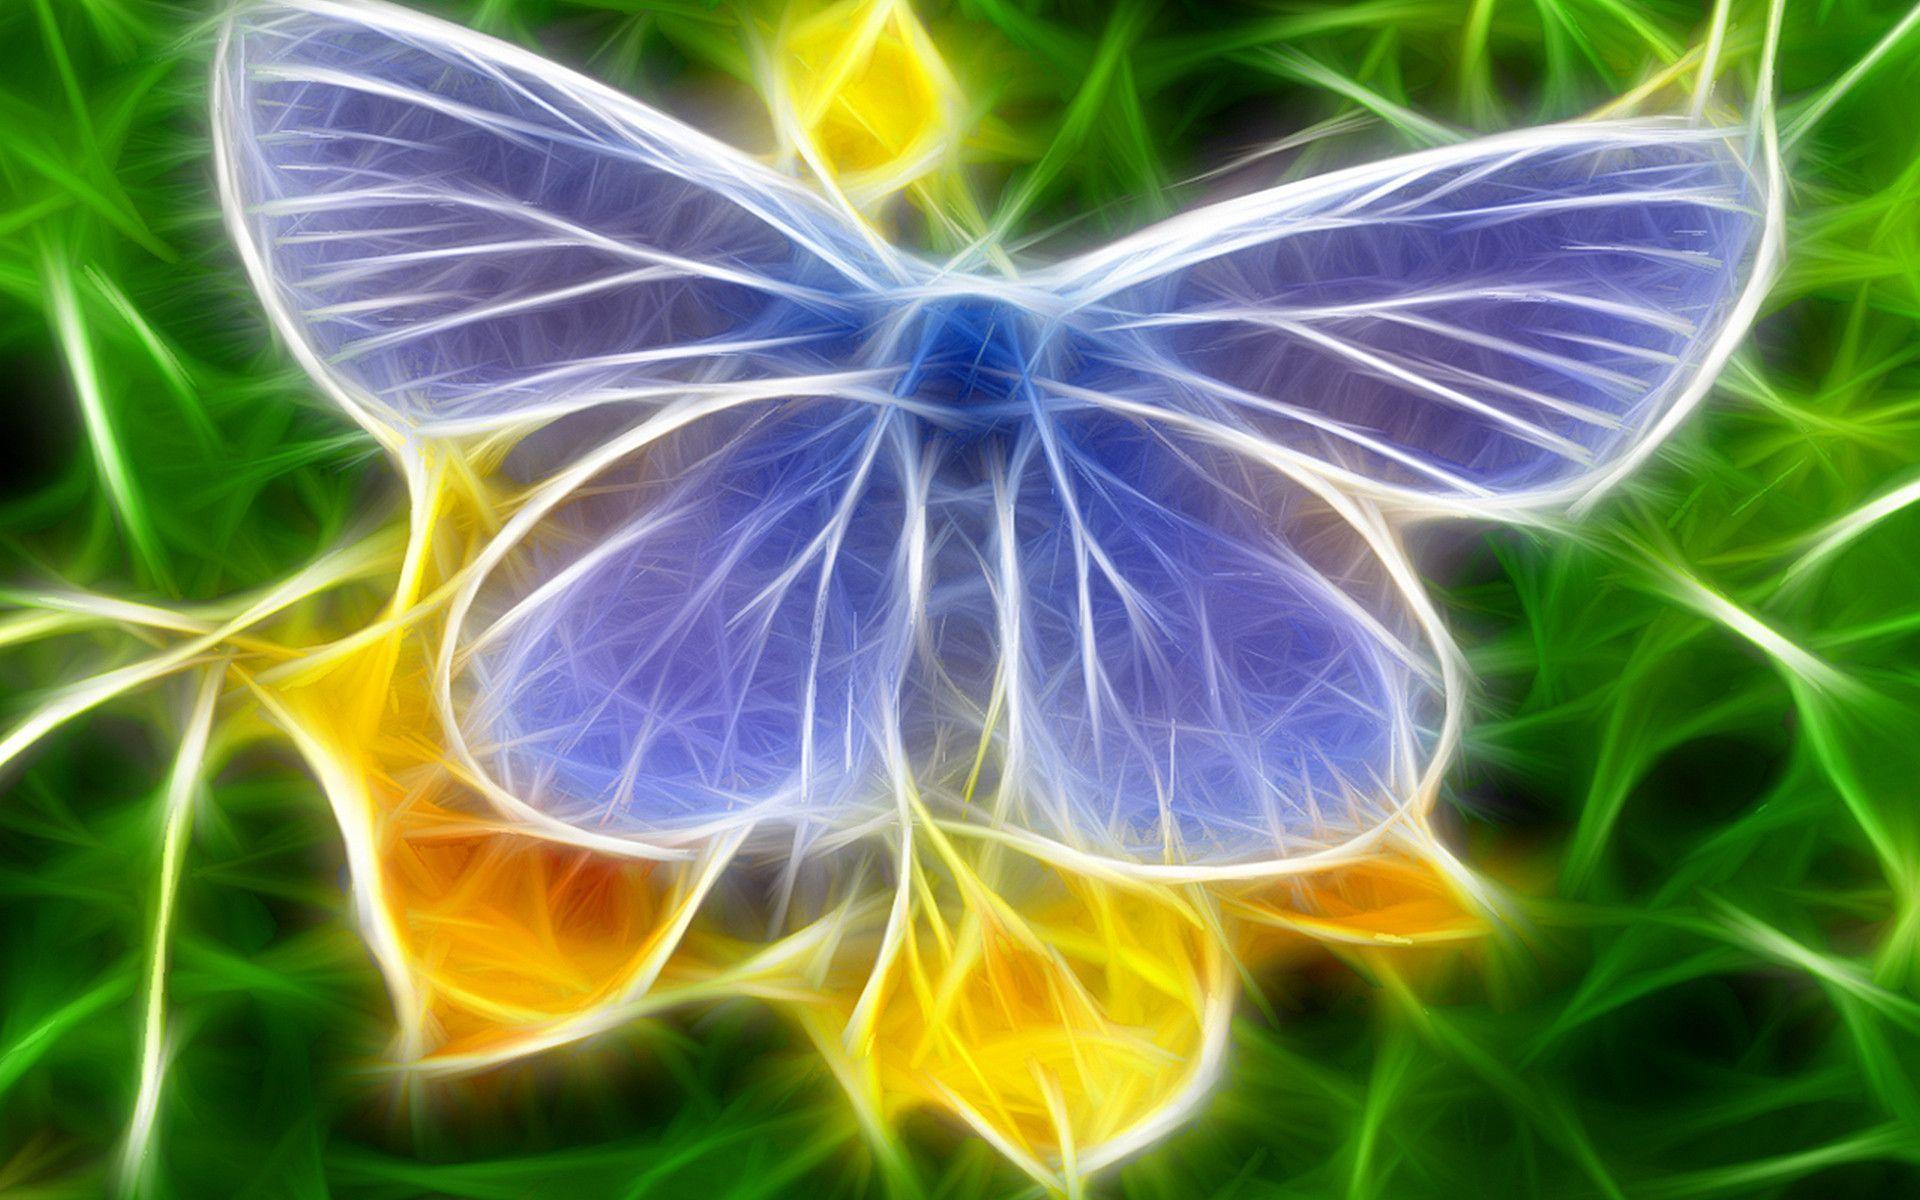 3D Butterfly HD Widescreen Desktop Wallpaper. High Quality PC